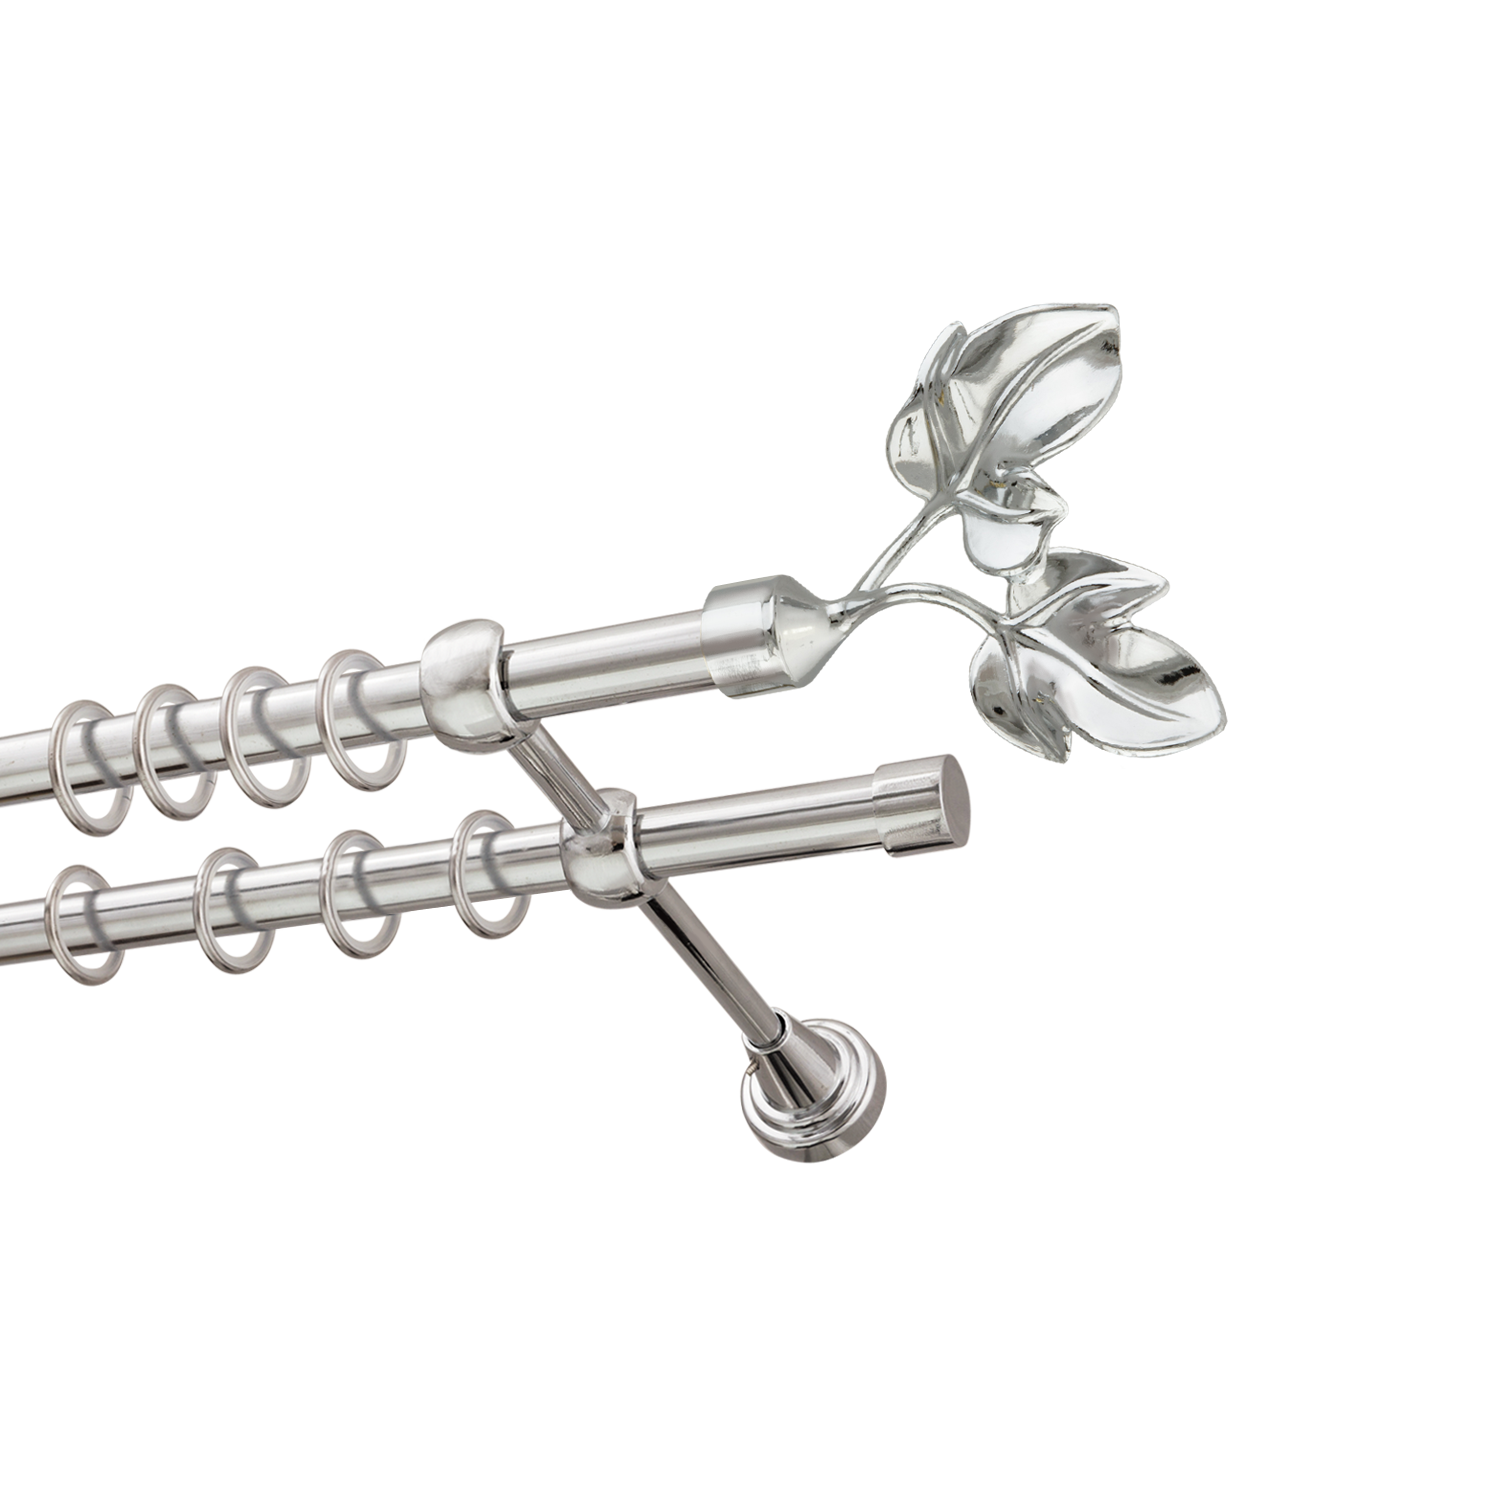 Металлический карниз для штор Листья, двухрядный 16/16 мм, серебро, гладкая штанга, длина 180 см - фото Wikidecor.ru